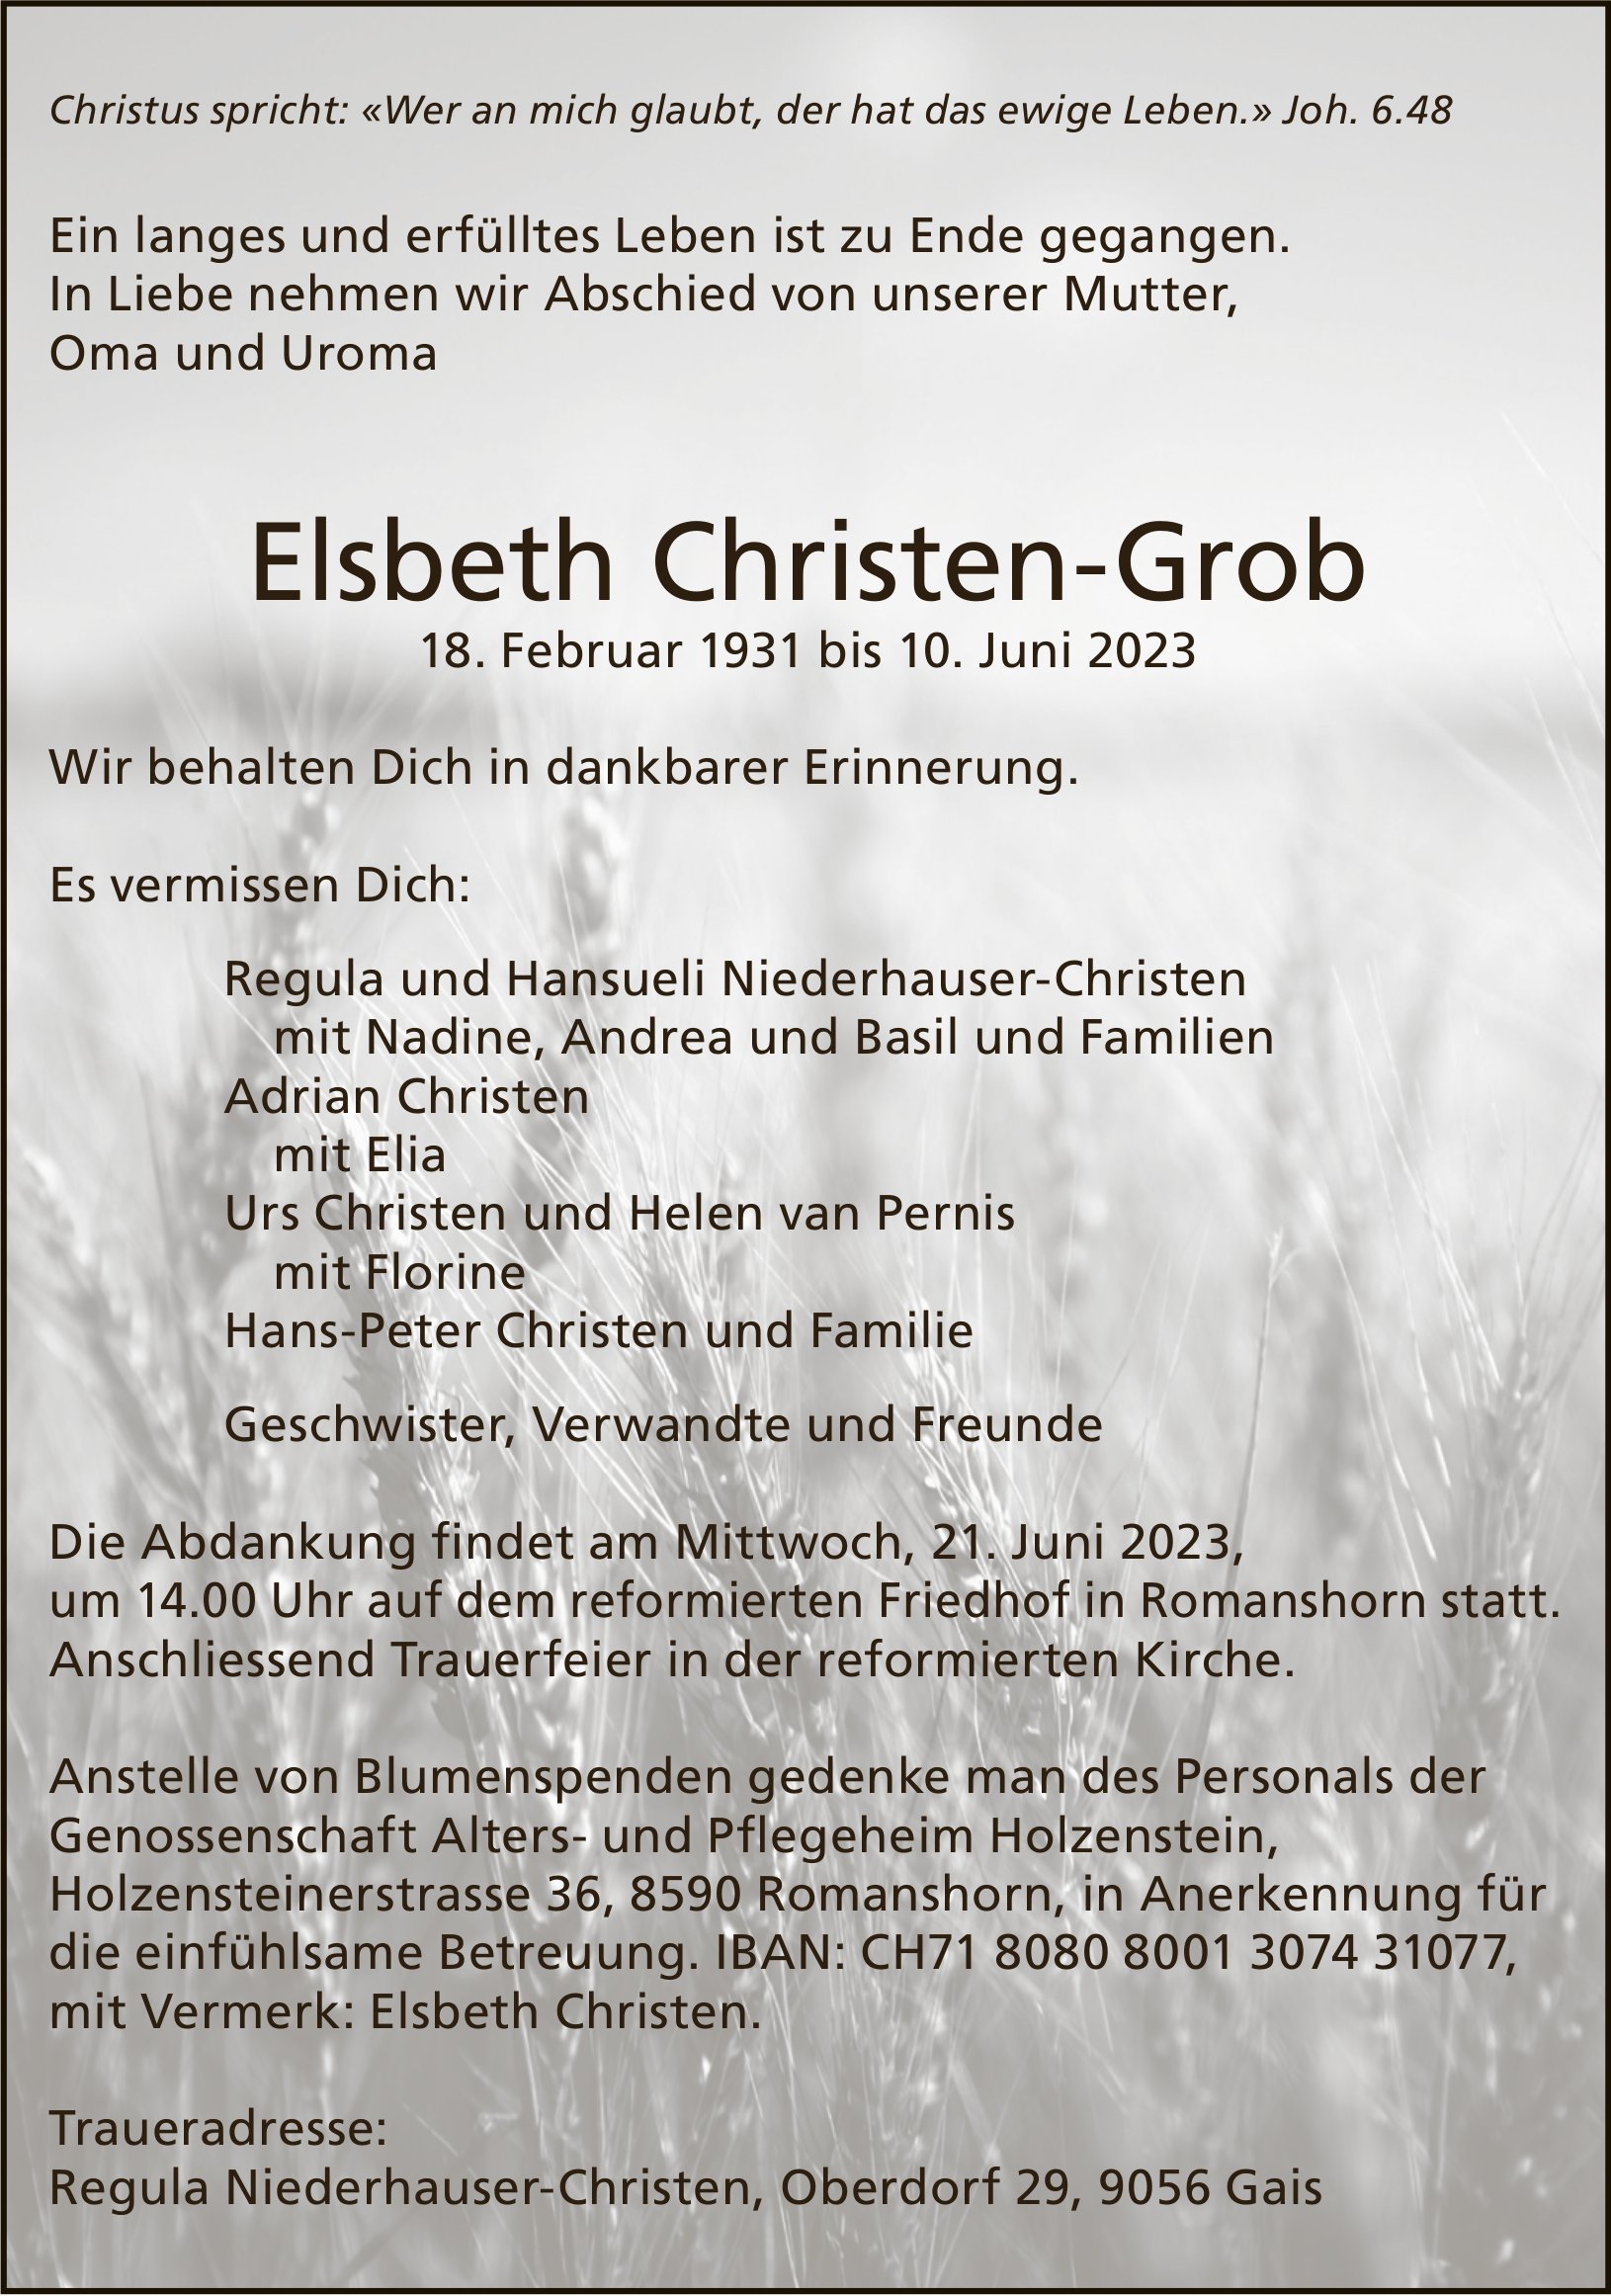 Christen-Grob Elsbeth, Juni 2023 / TA